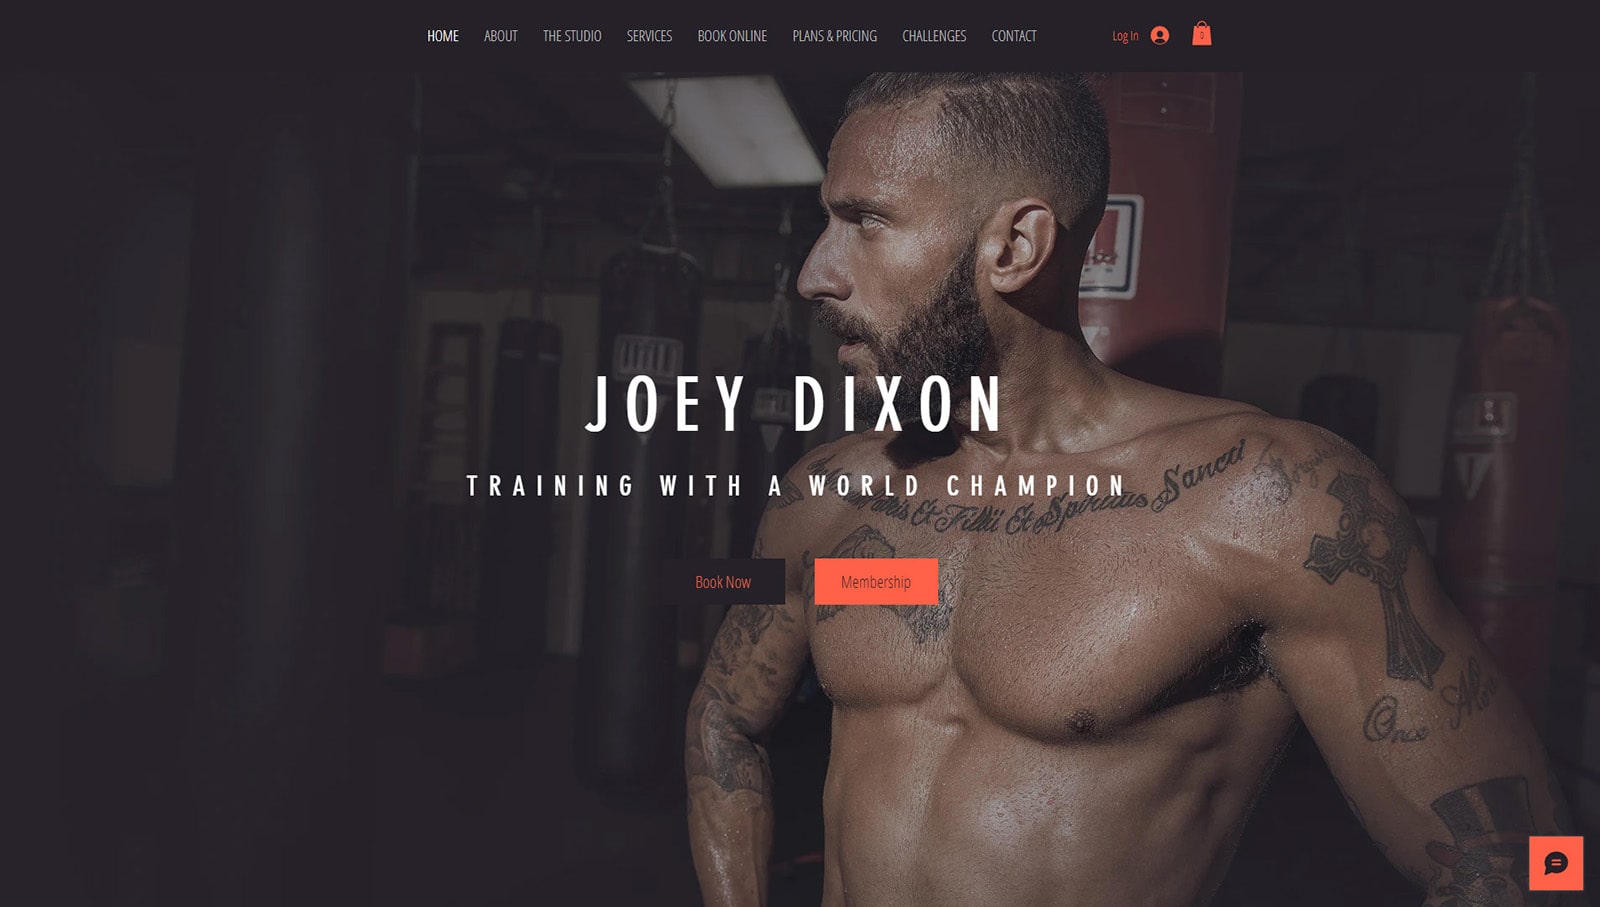 Wizualizacja Joey'a Dixona, szablonu Wix oferującego responsywny projekt strony internetowej siłowni.